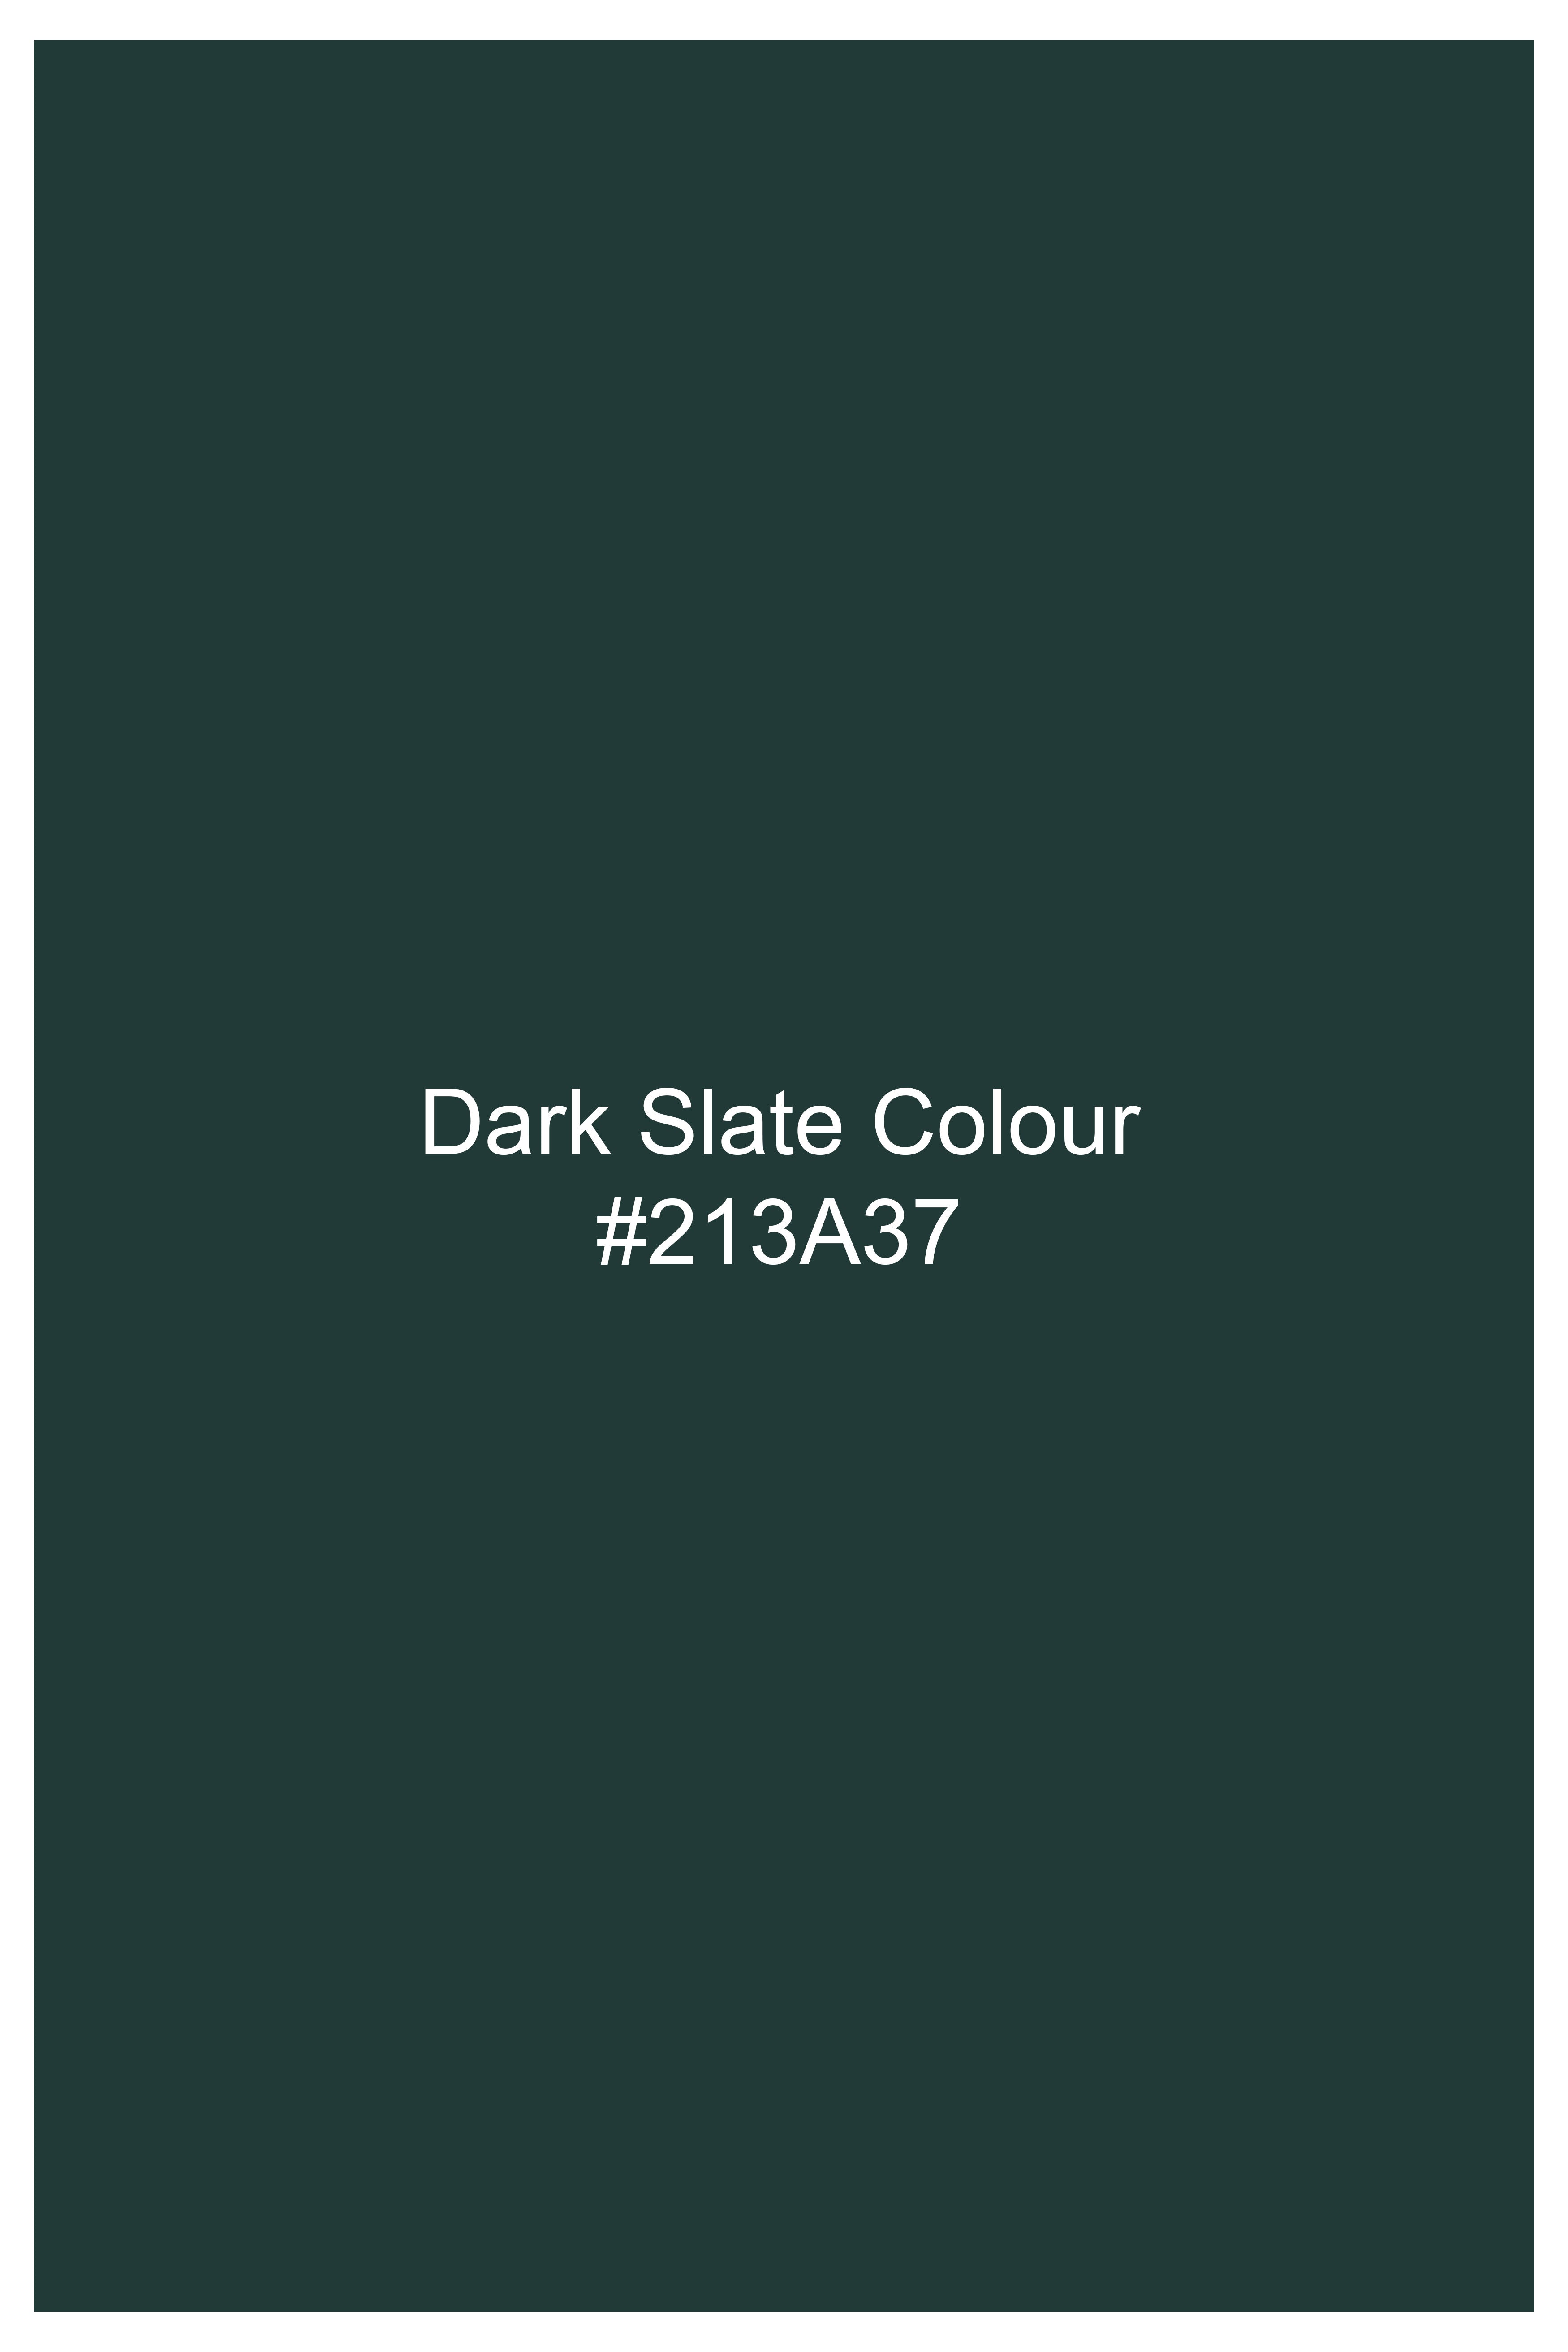 Dark Slate Green Premium Cotton Waistcoat V2739-36, V2739-38, V2739-40, V2739-42, V2739-44, V2739-46, V2739-48, V2739-50, V2739-52, V2739-54, V2739-56, V2739-58, V2739-60